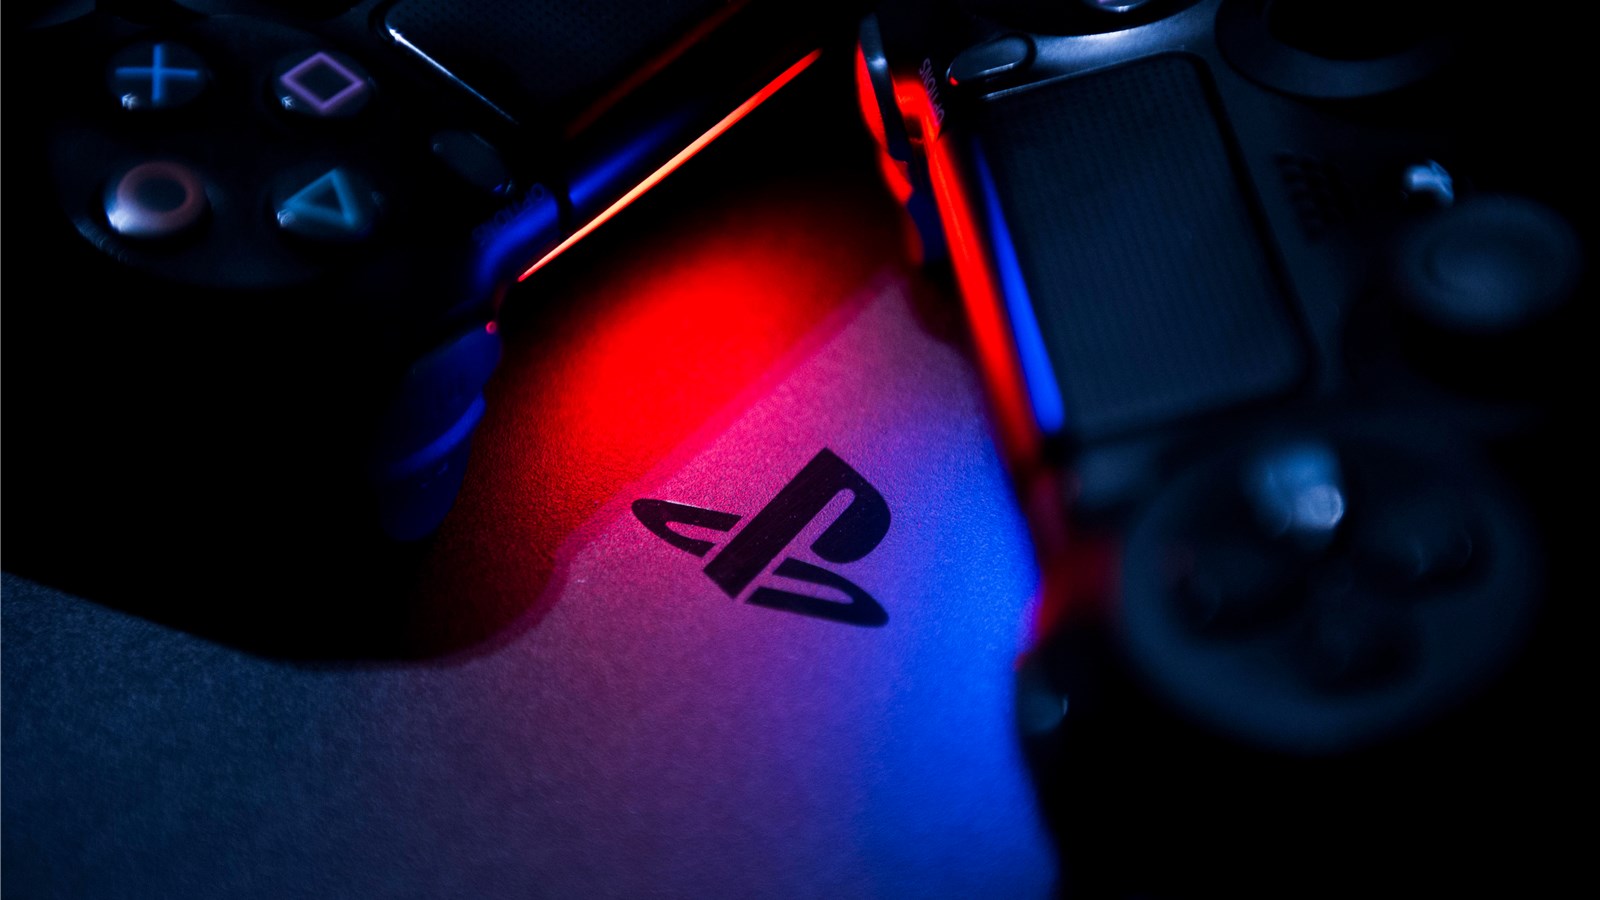 Rò rỉ giao diện từ bộ dev kit của PlayStation 5